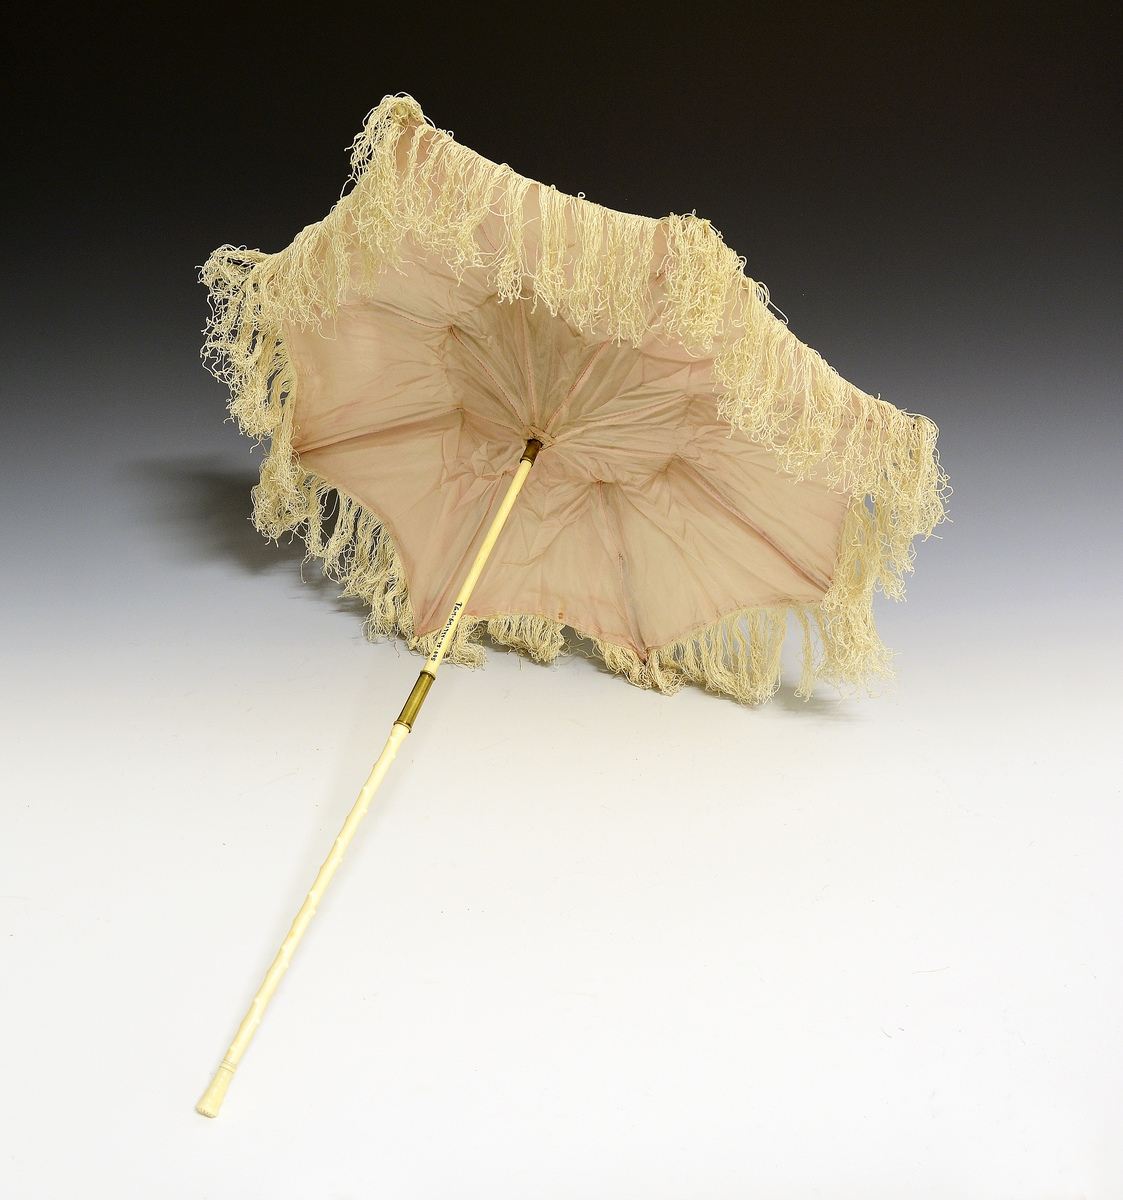 Knekkparasoll. Fra protokollen: "Knekk-parasol" av kvit silke, med bleikraudt fôr og tafs ikringum. Stongi, som er av elfenbein hev massingholk til aa smøygje yvi leden, og beint, knuprut skaft paa lag 48 cm. langt. Tre-spilur.